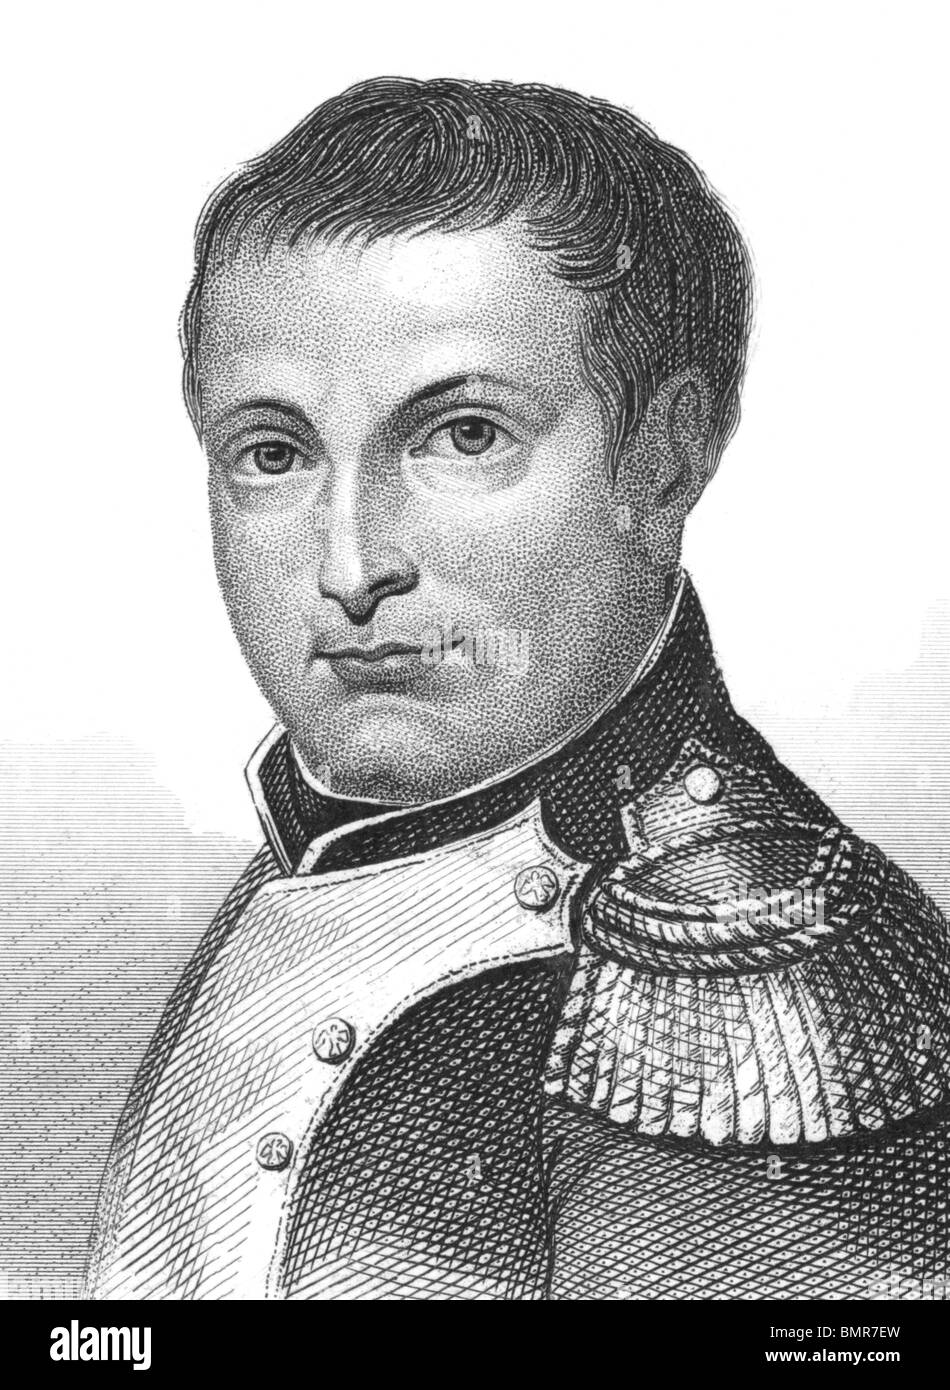 Napoléon Bonaparte (1769-1821) gravure sur des années 1800. Empereur de France. L'une des personnes les plus brillantes de l'histoire. Banque D'Images